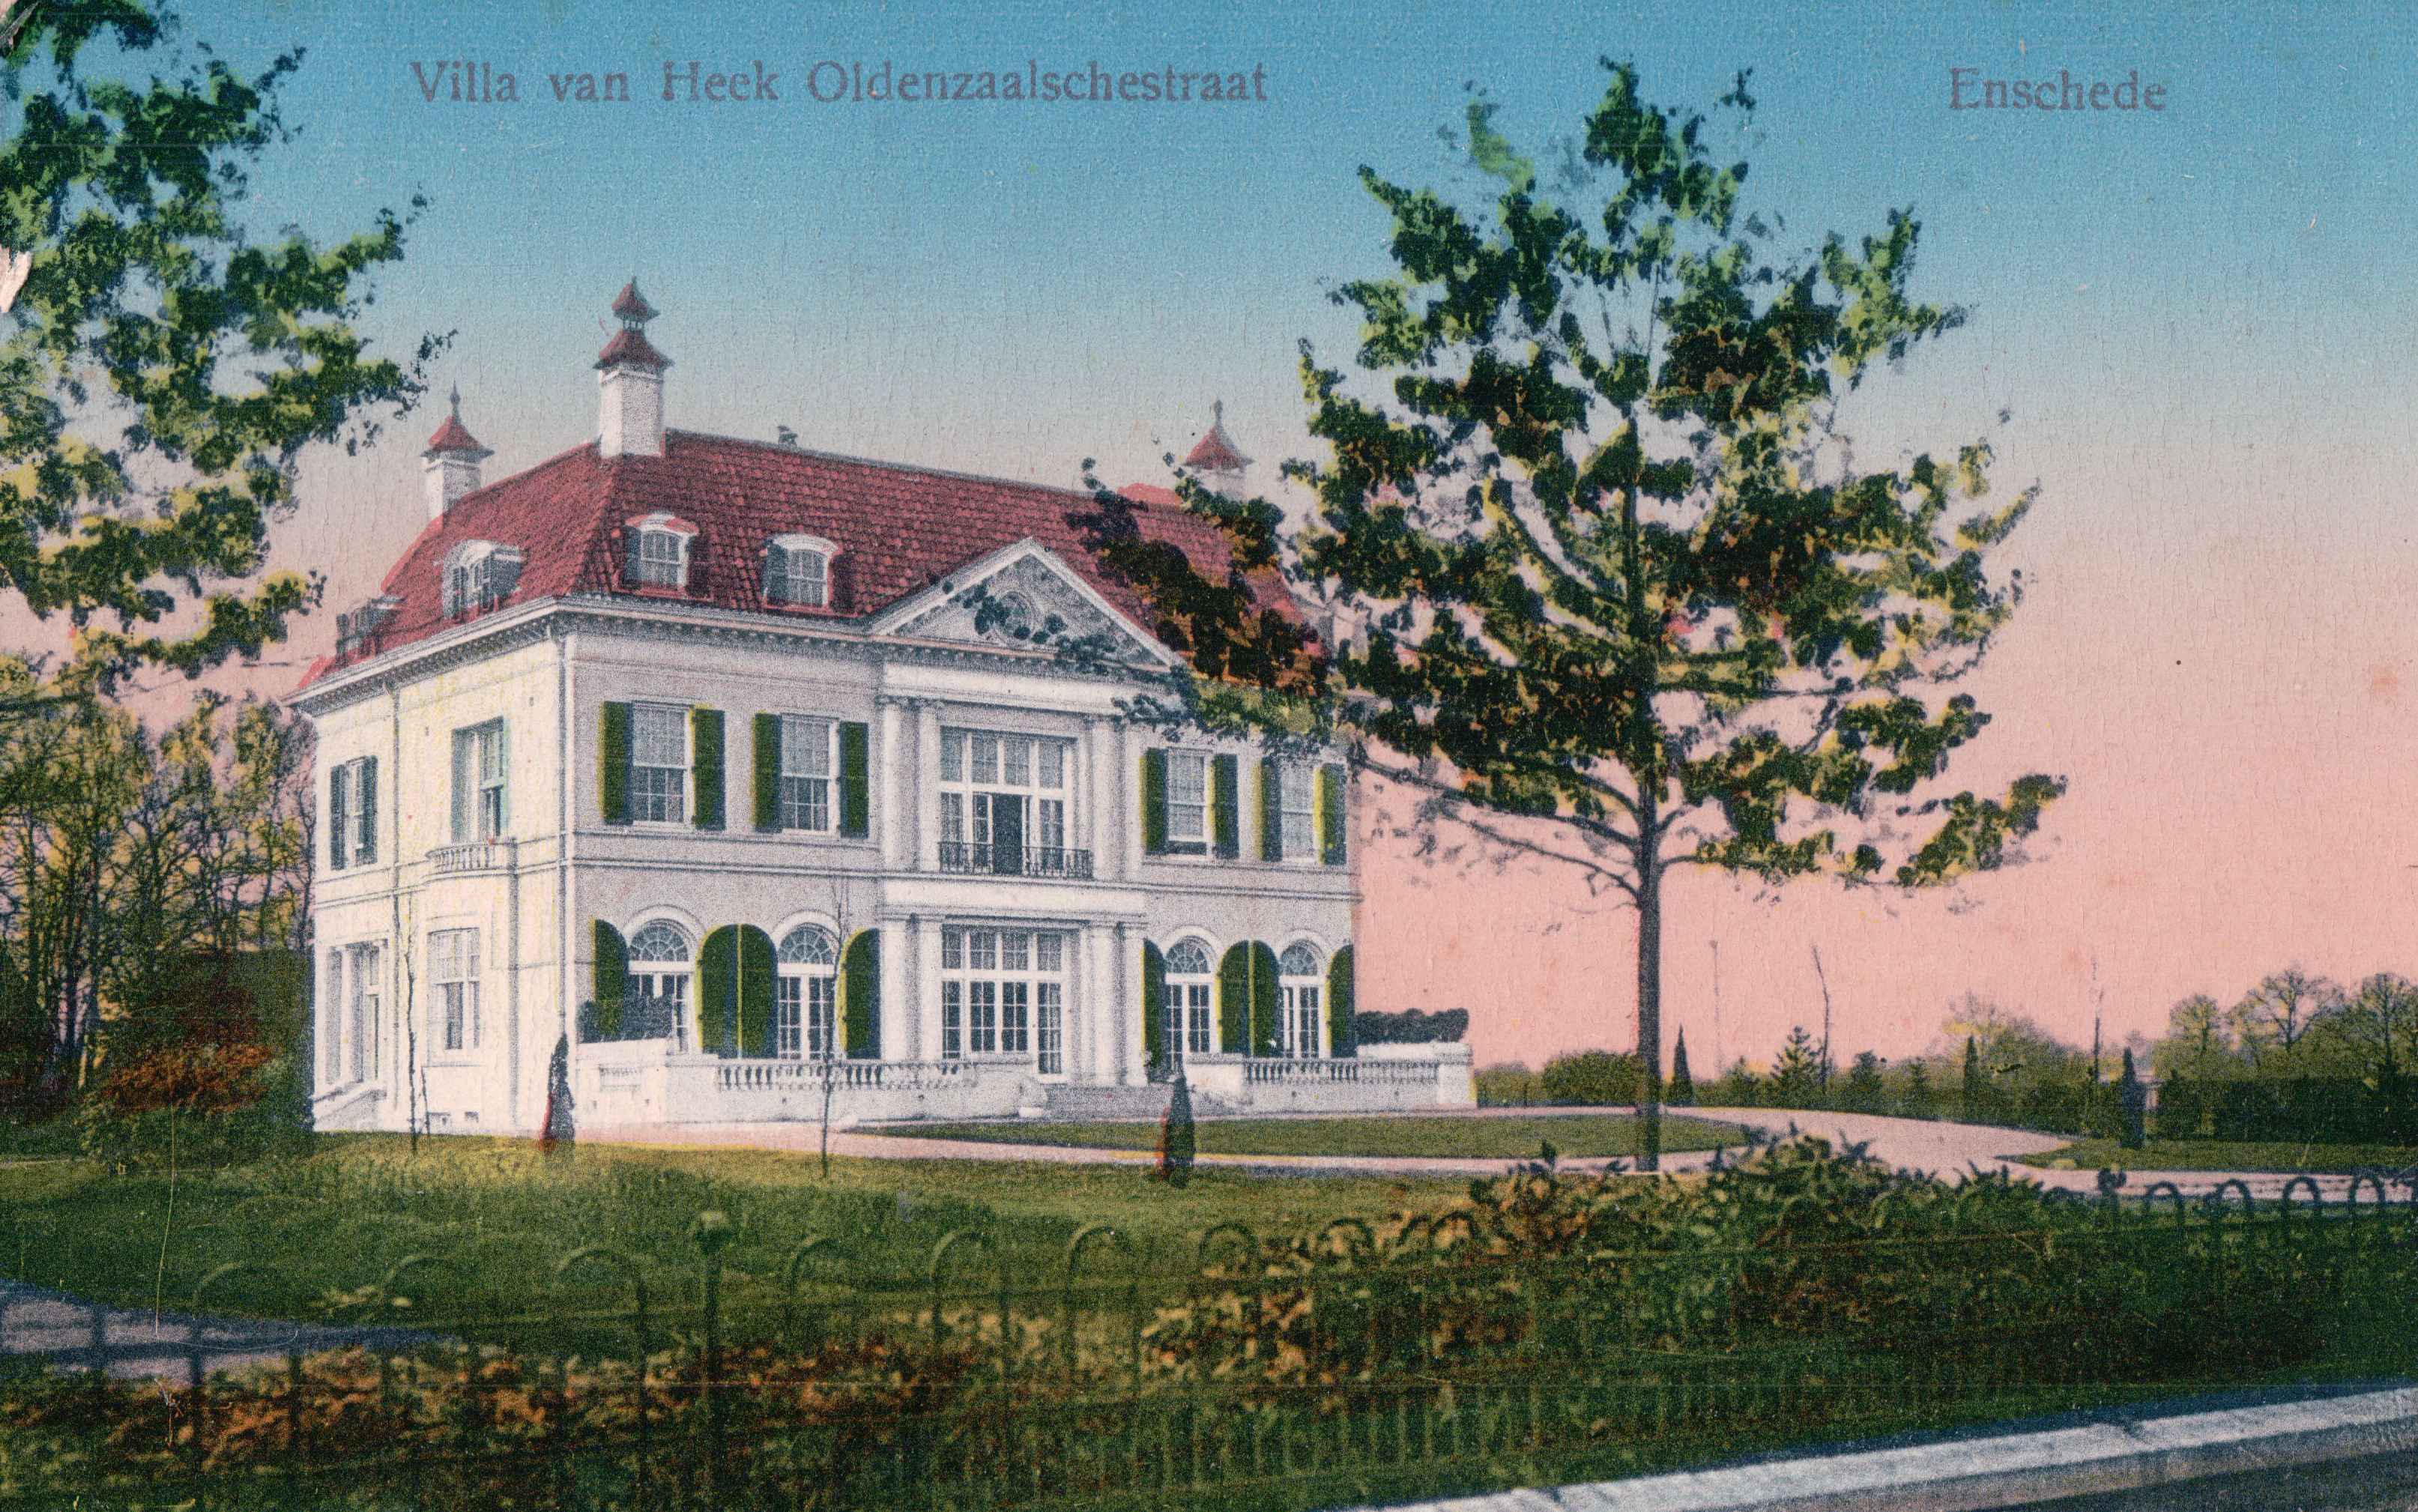 Villa-van-heek-1920-a7aaaf35.jpg